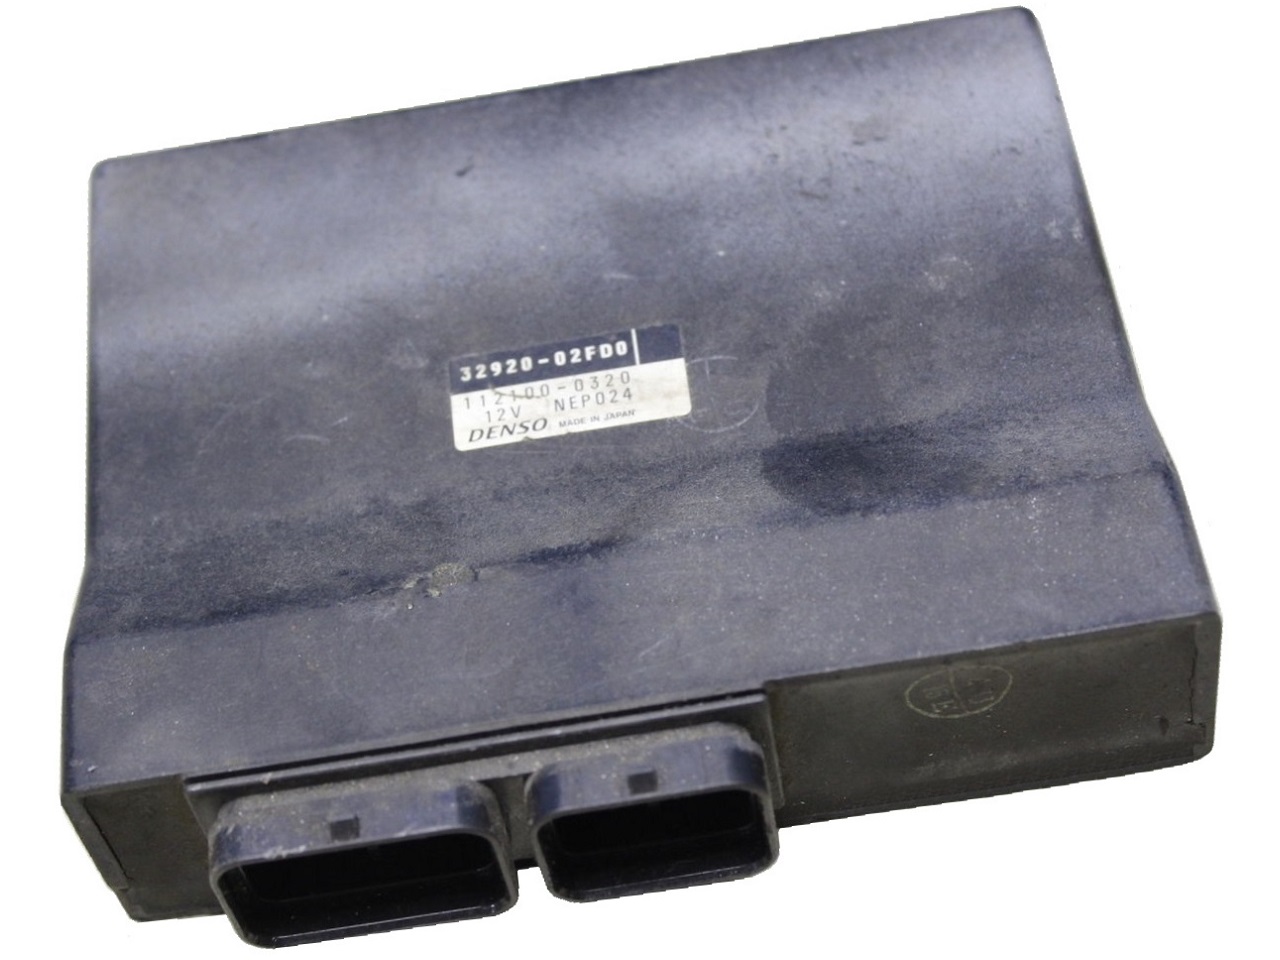 TL1000R ECU ECM CDI controlador de caixa preta de computador (32920-02FA0, 112100-0290)